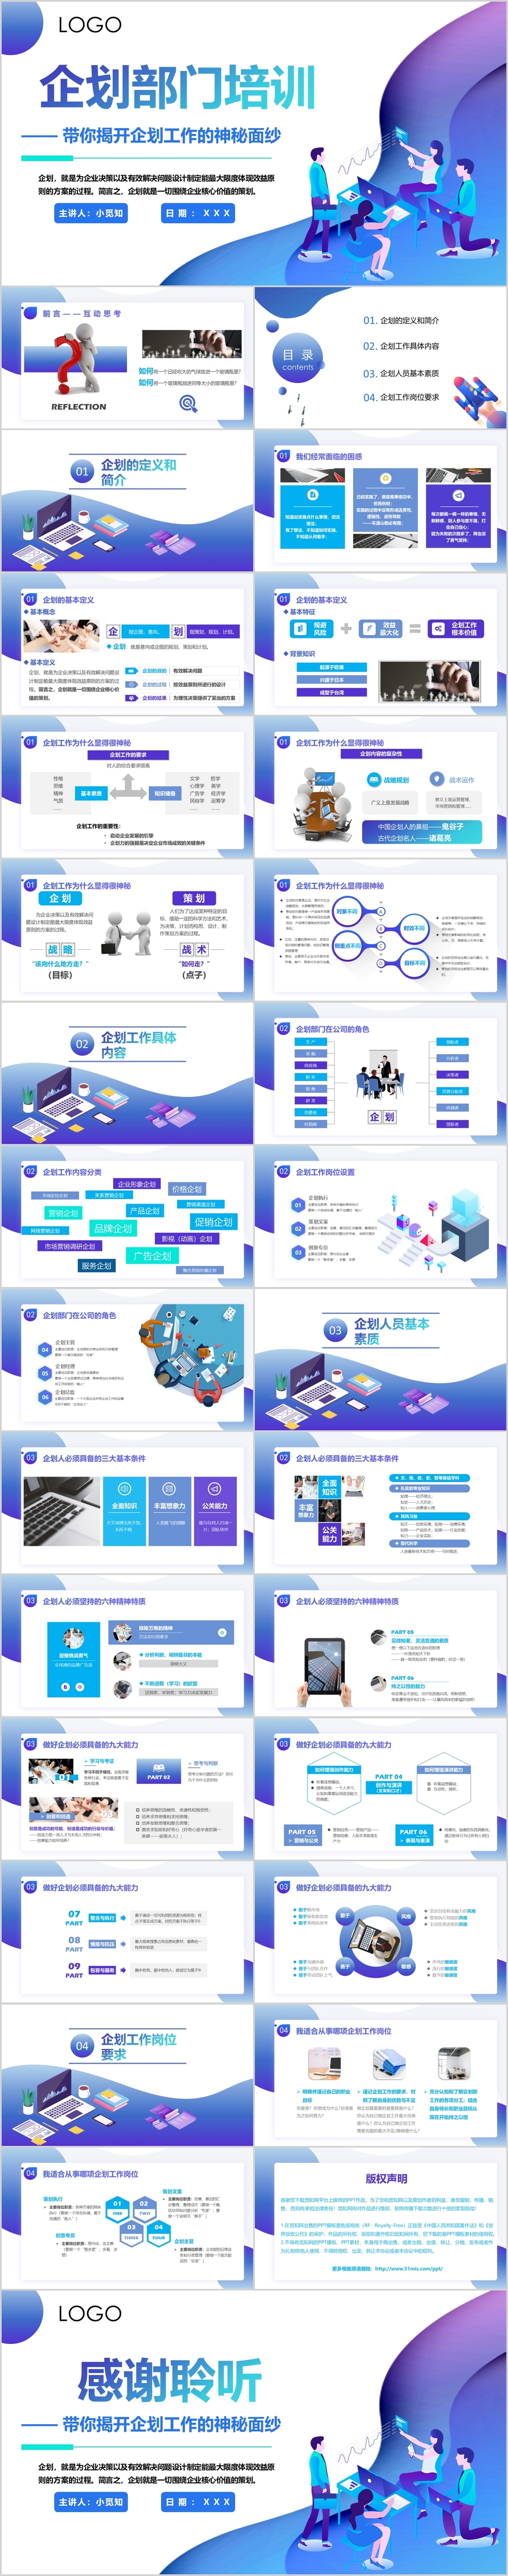 蓝色紫色渐变色商务企业企划培训部门营销团队管理ppt模板